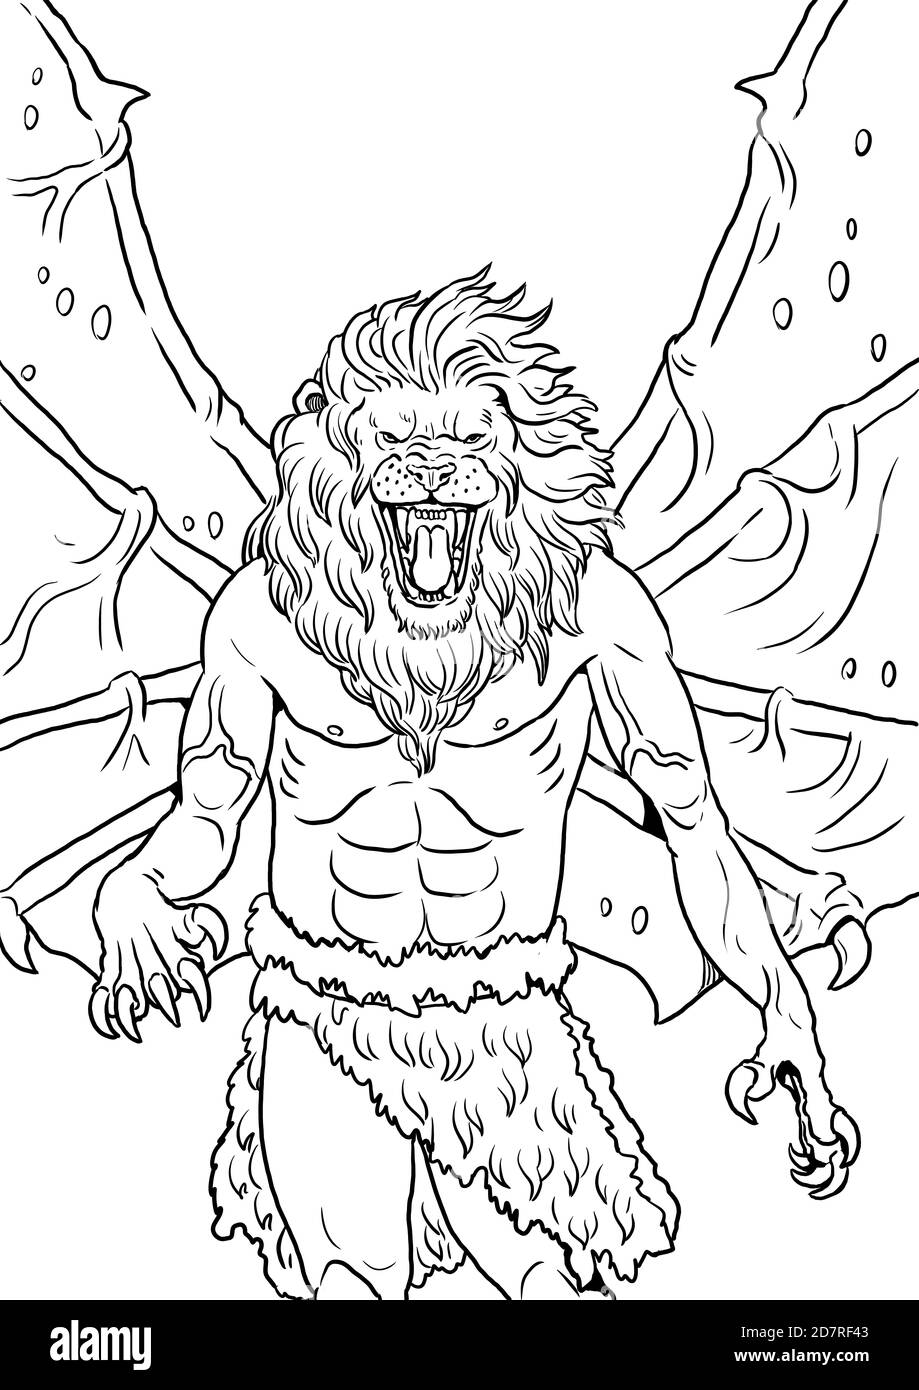 Disegno mutante fantasy. Uomo leone con dima da colorare delle ali. Foto Stock